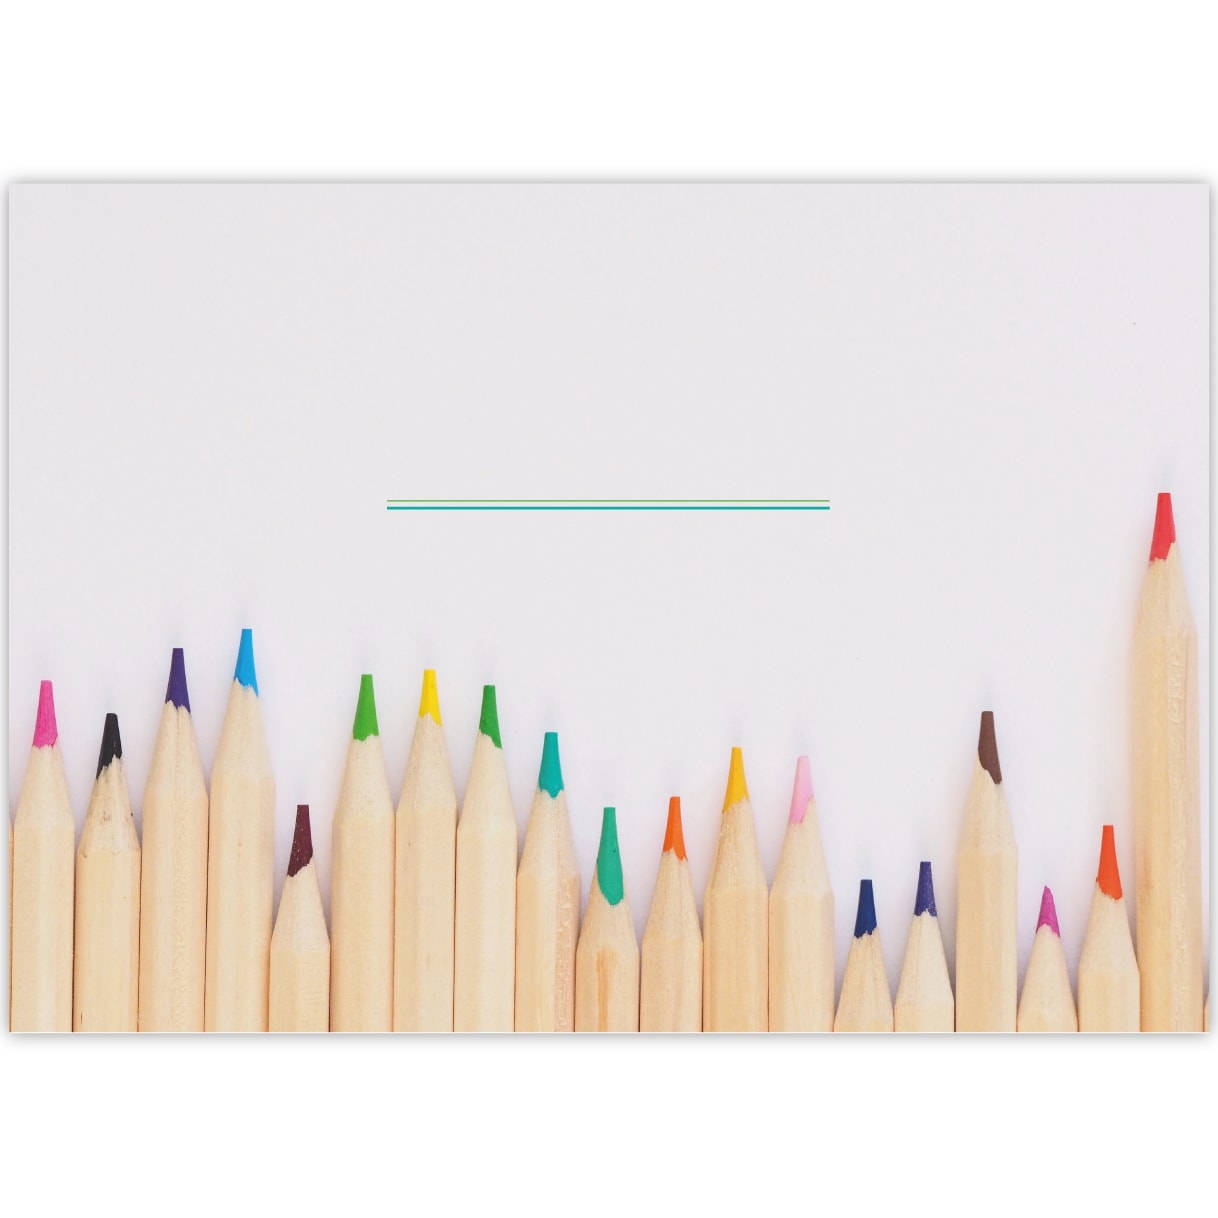 Kartenkaufrausch: Malblock Motiv "Buntstifte" aus unserer Malblock Papeterie in multicolor